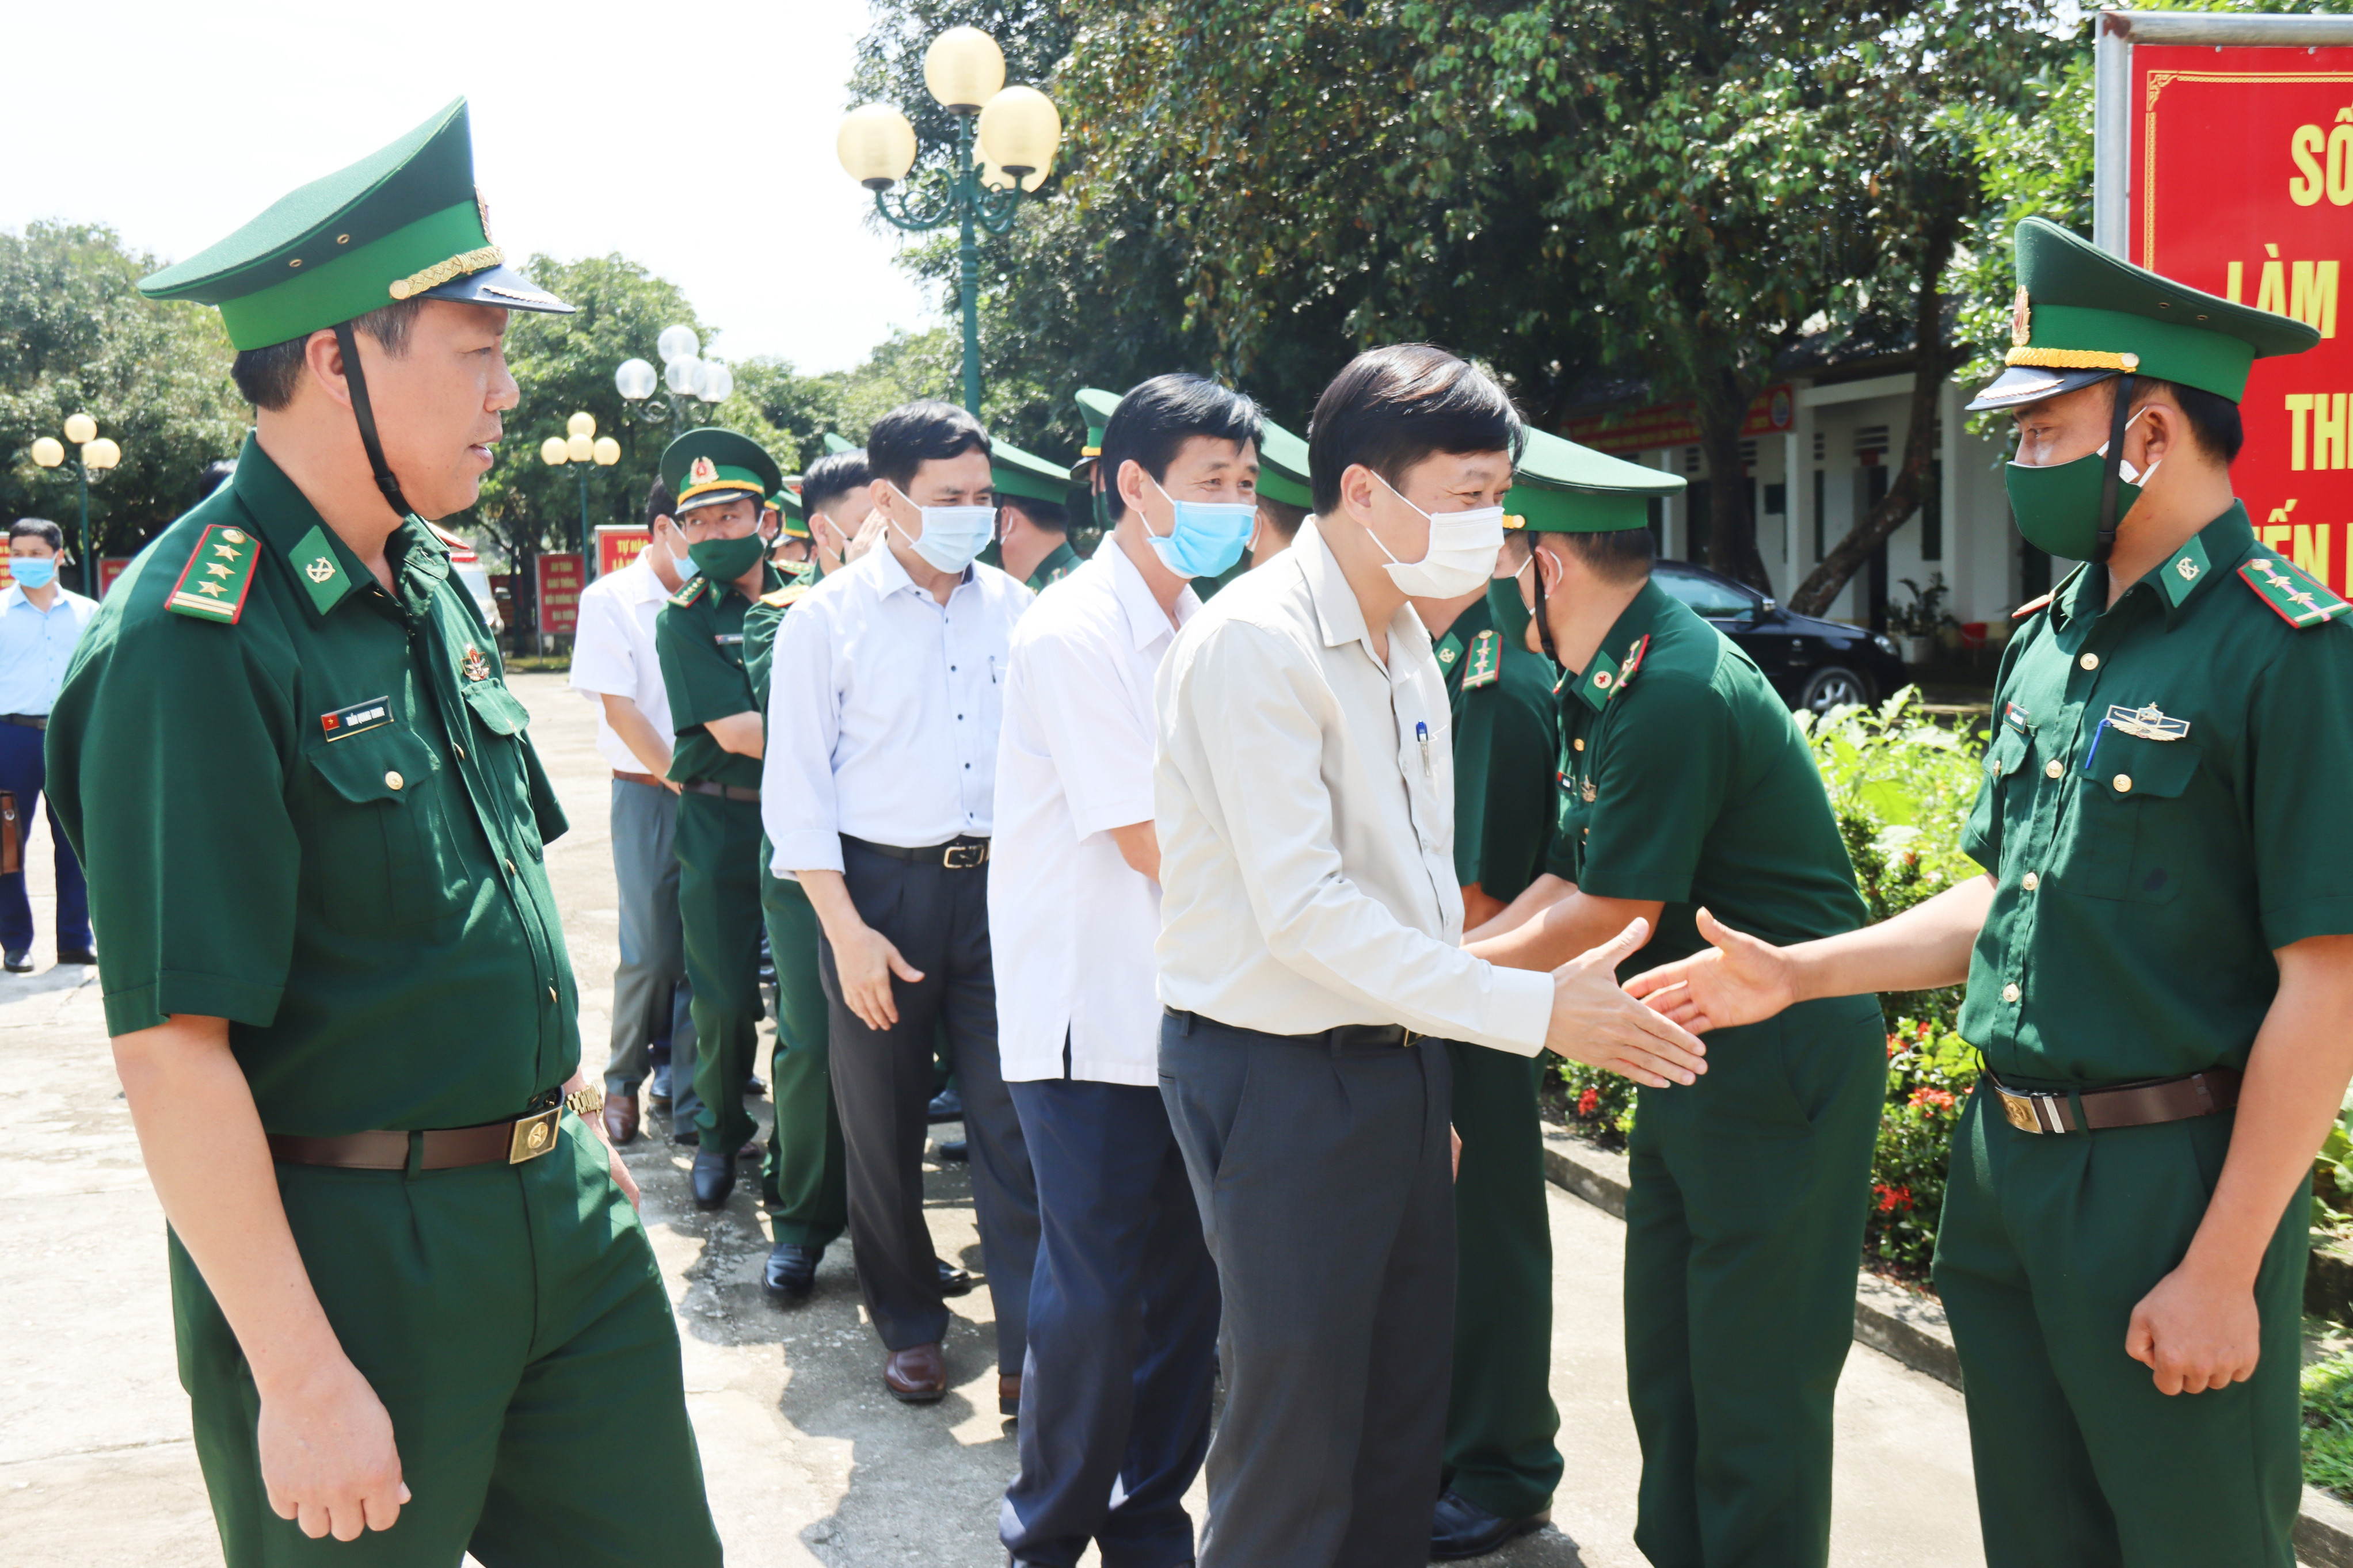 Đồng chí Lê Hồng Vinh thăm hỏi động viện kiểm tra công tác phòng chống dịch tại Đồn Biên phòng Hạnh Dịch. Ảnh: Thanh Lê